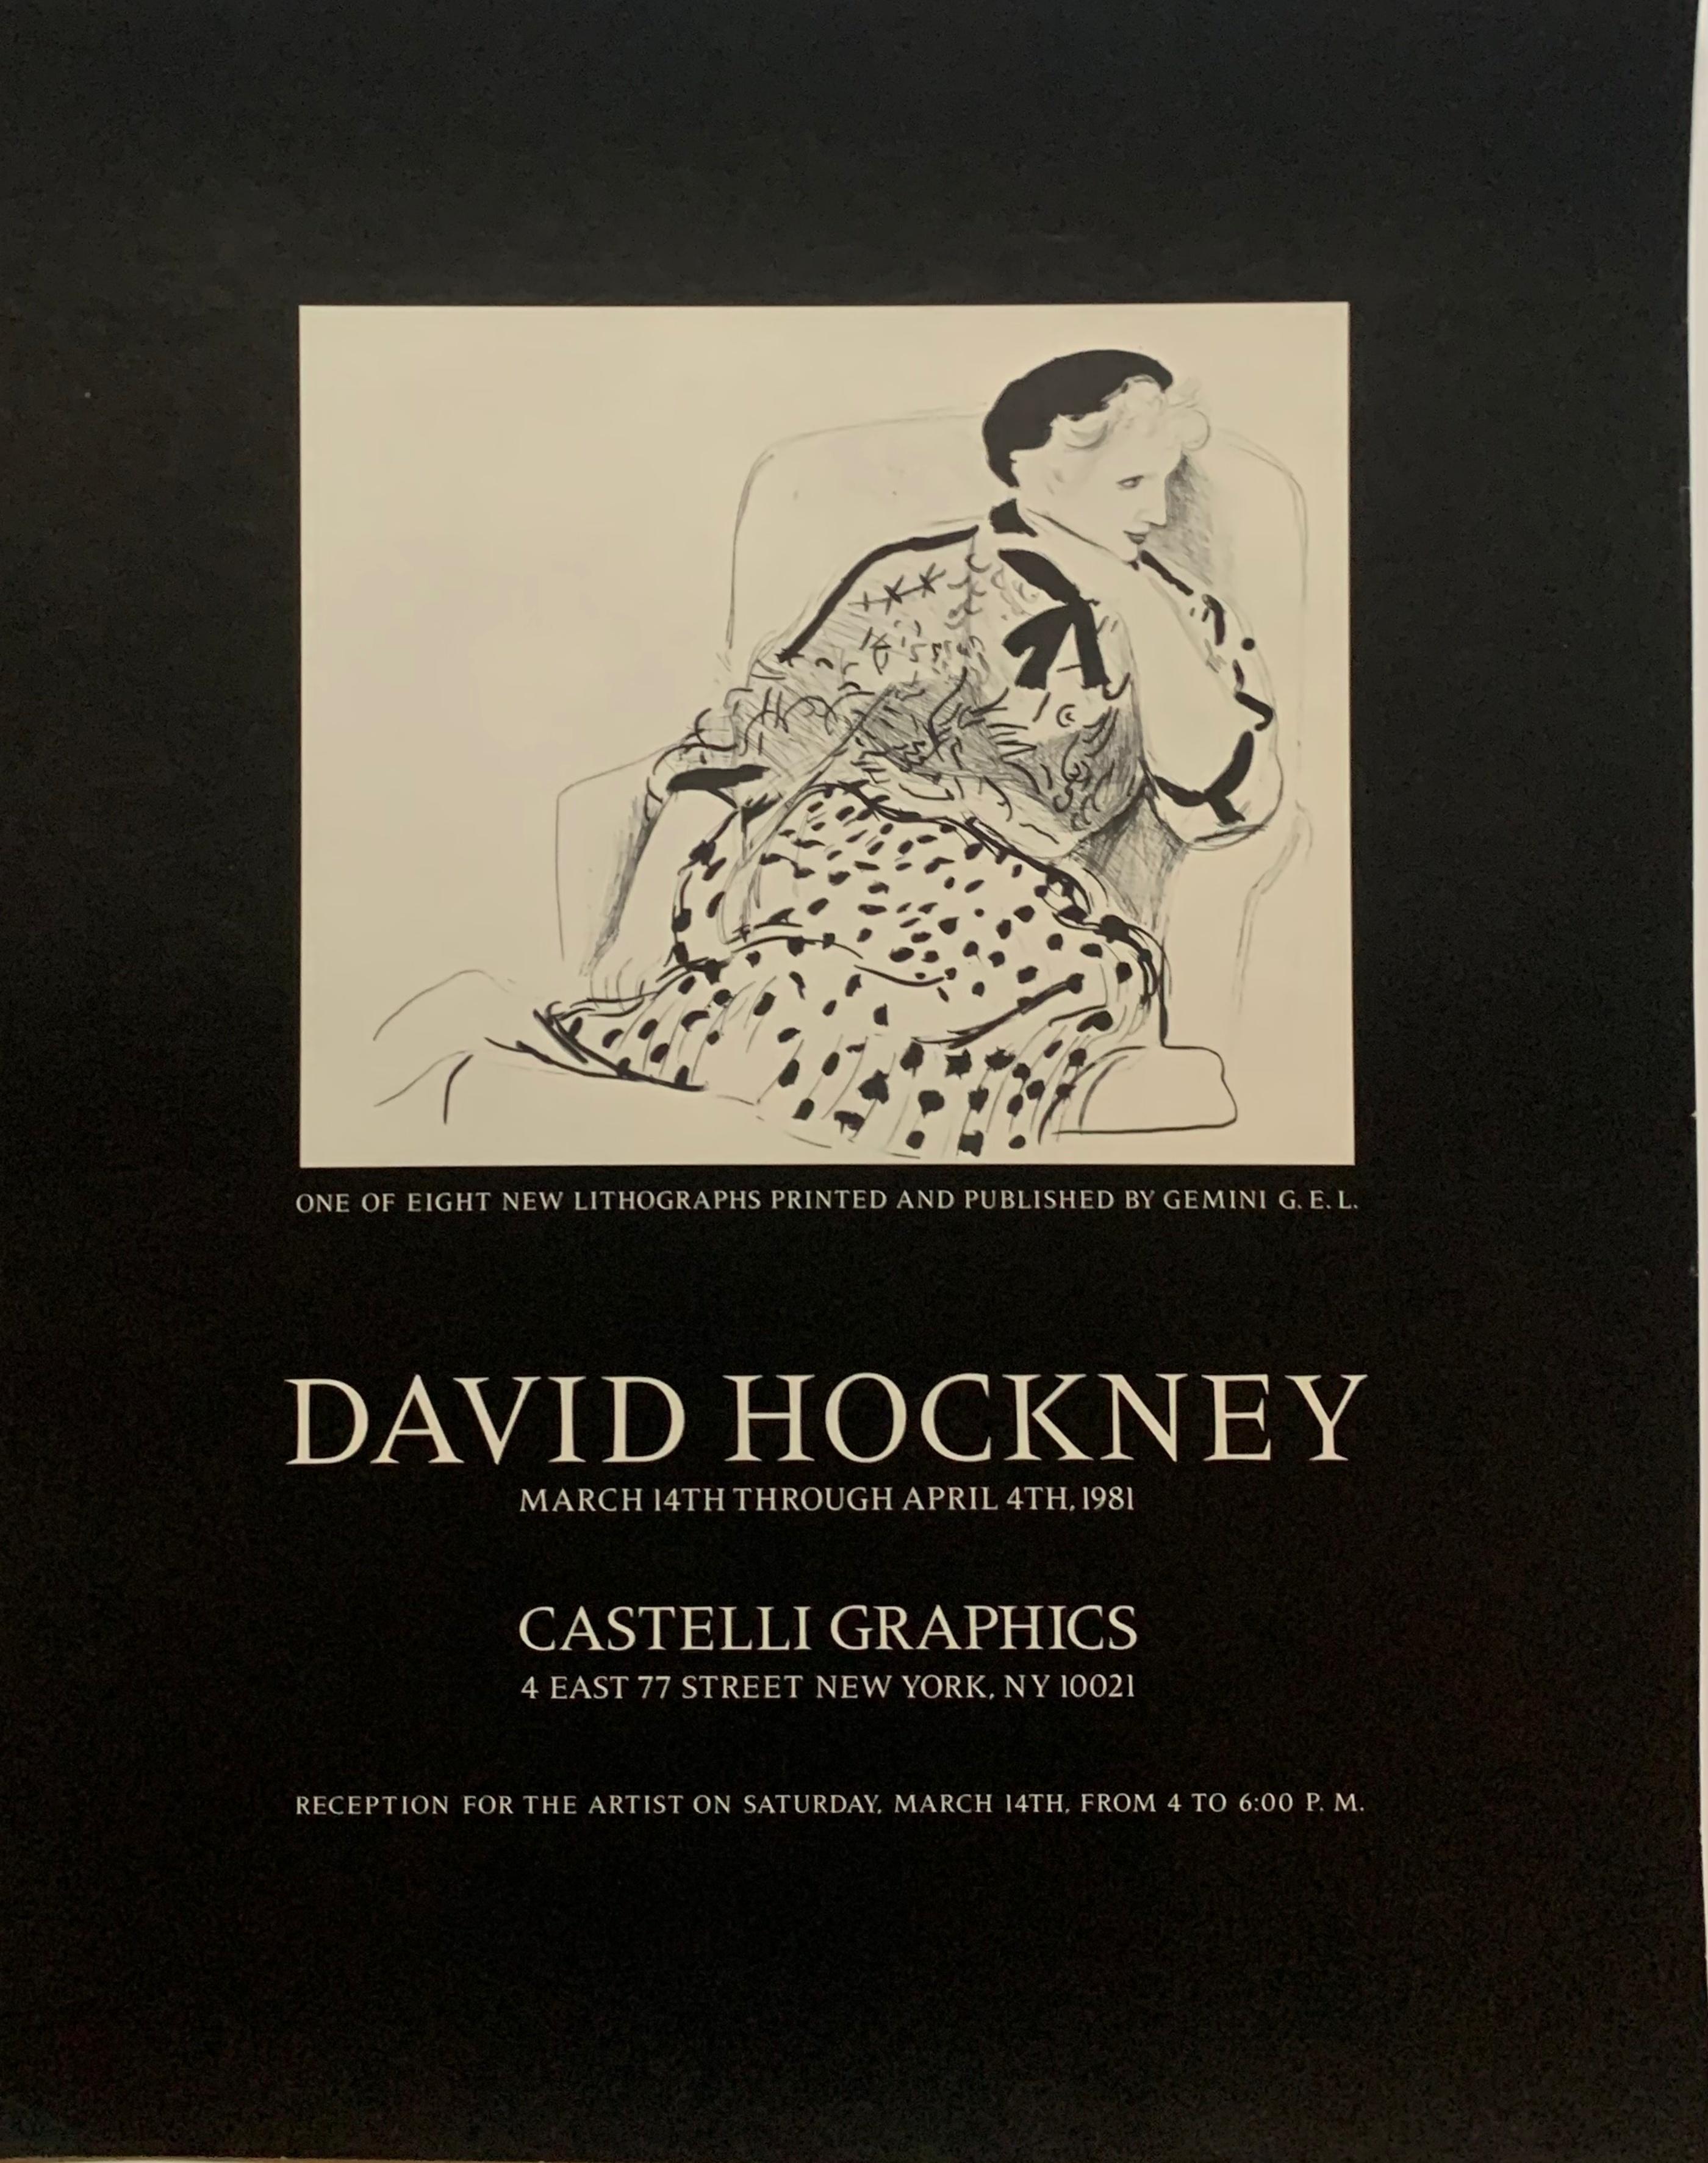 David Hockney
David Hockney bei Castelli Graphics, 1981
Offset-Lithographie-Poster
20 × 16 Zoll
Ungerahmt
Seltenes Plakat aus dem Jahr 1981, das anlässlich der Veröffentlichung einer Serie neuer David-Hockney-Drucke durch Gemini GEL herausgegeben